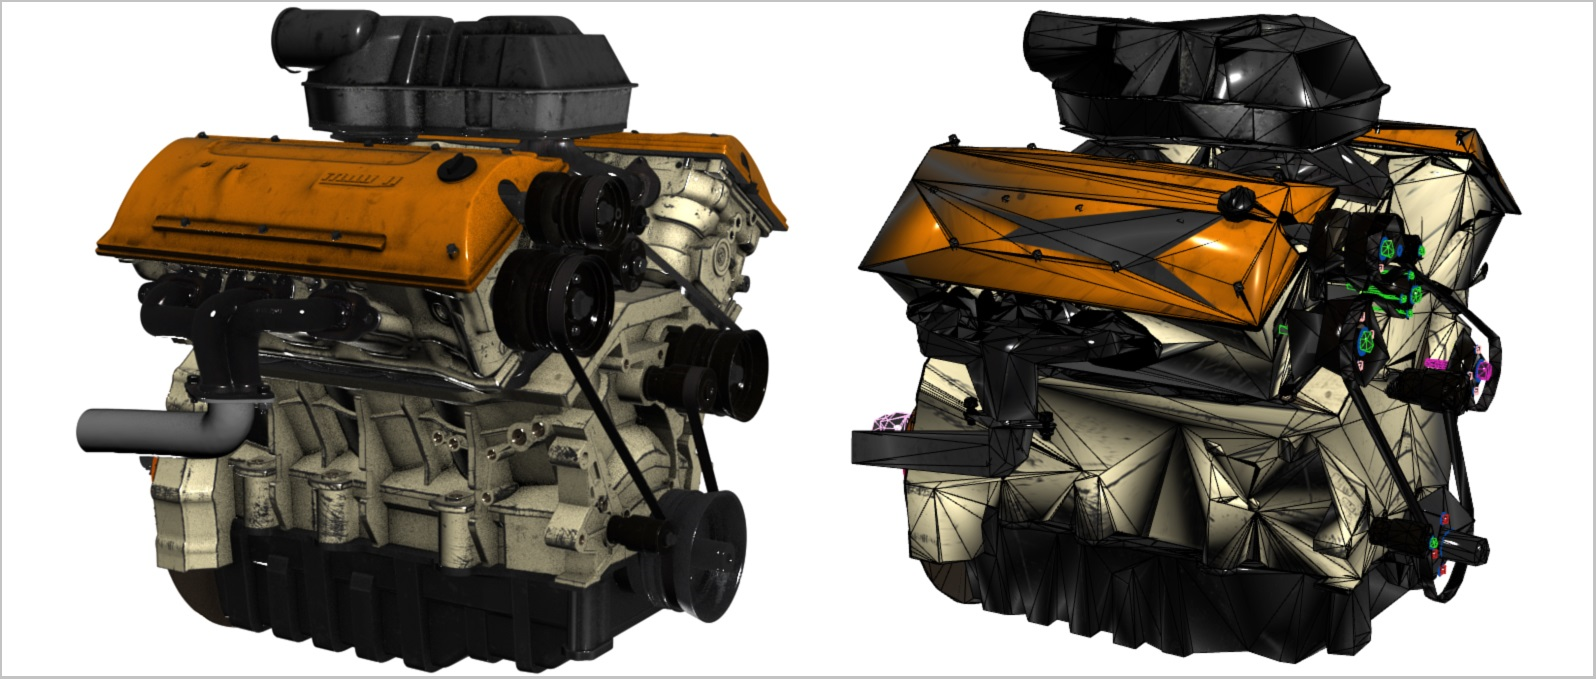 Fotografia dwóch modeli 3D silników samochodowych. Model po lewej zawiera dużo trójkątów, a model po prawej zawiera mało trójkątów.